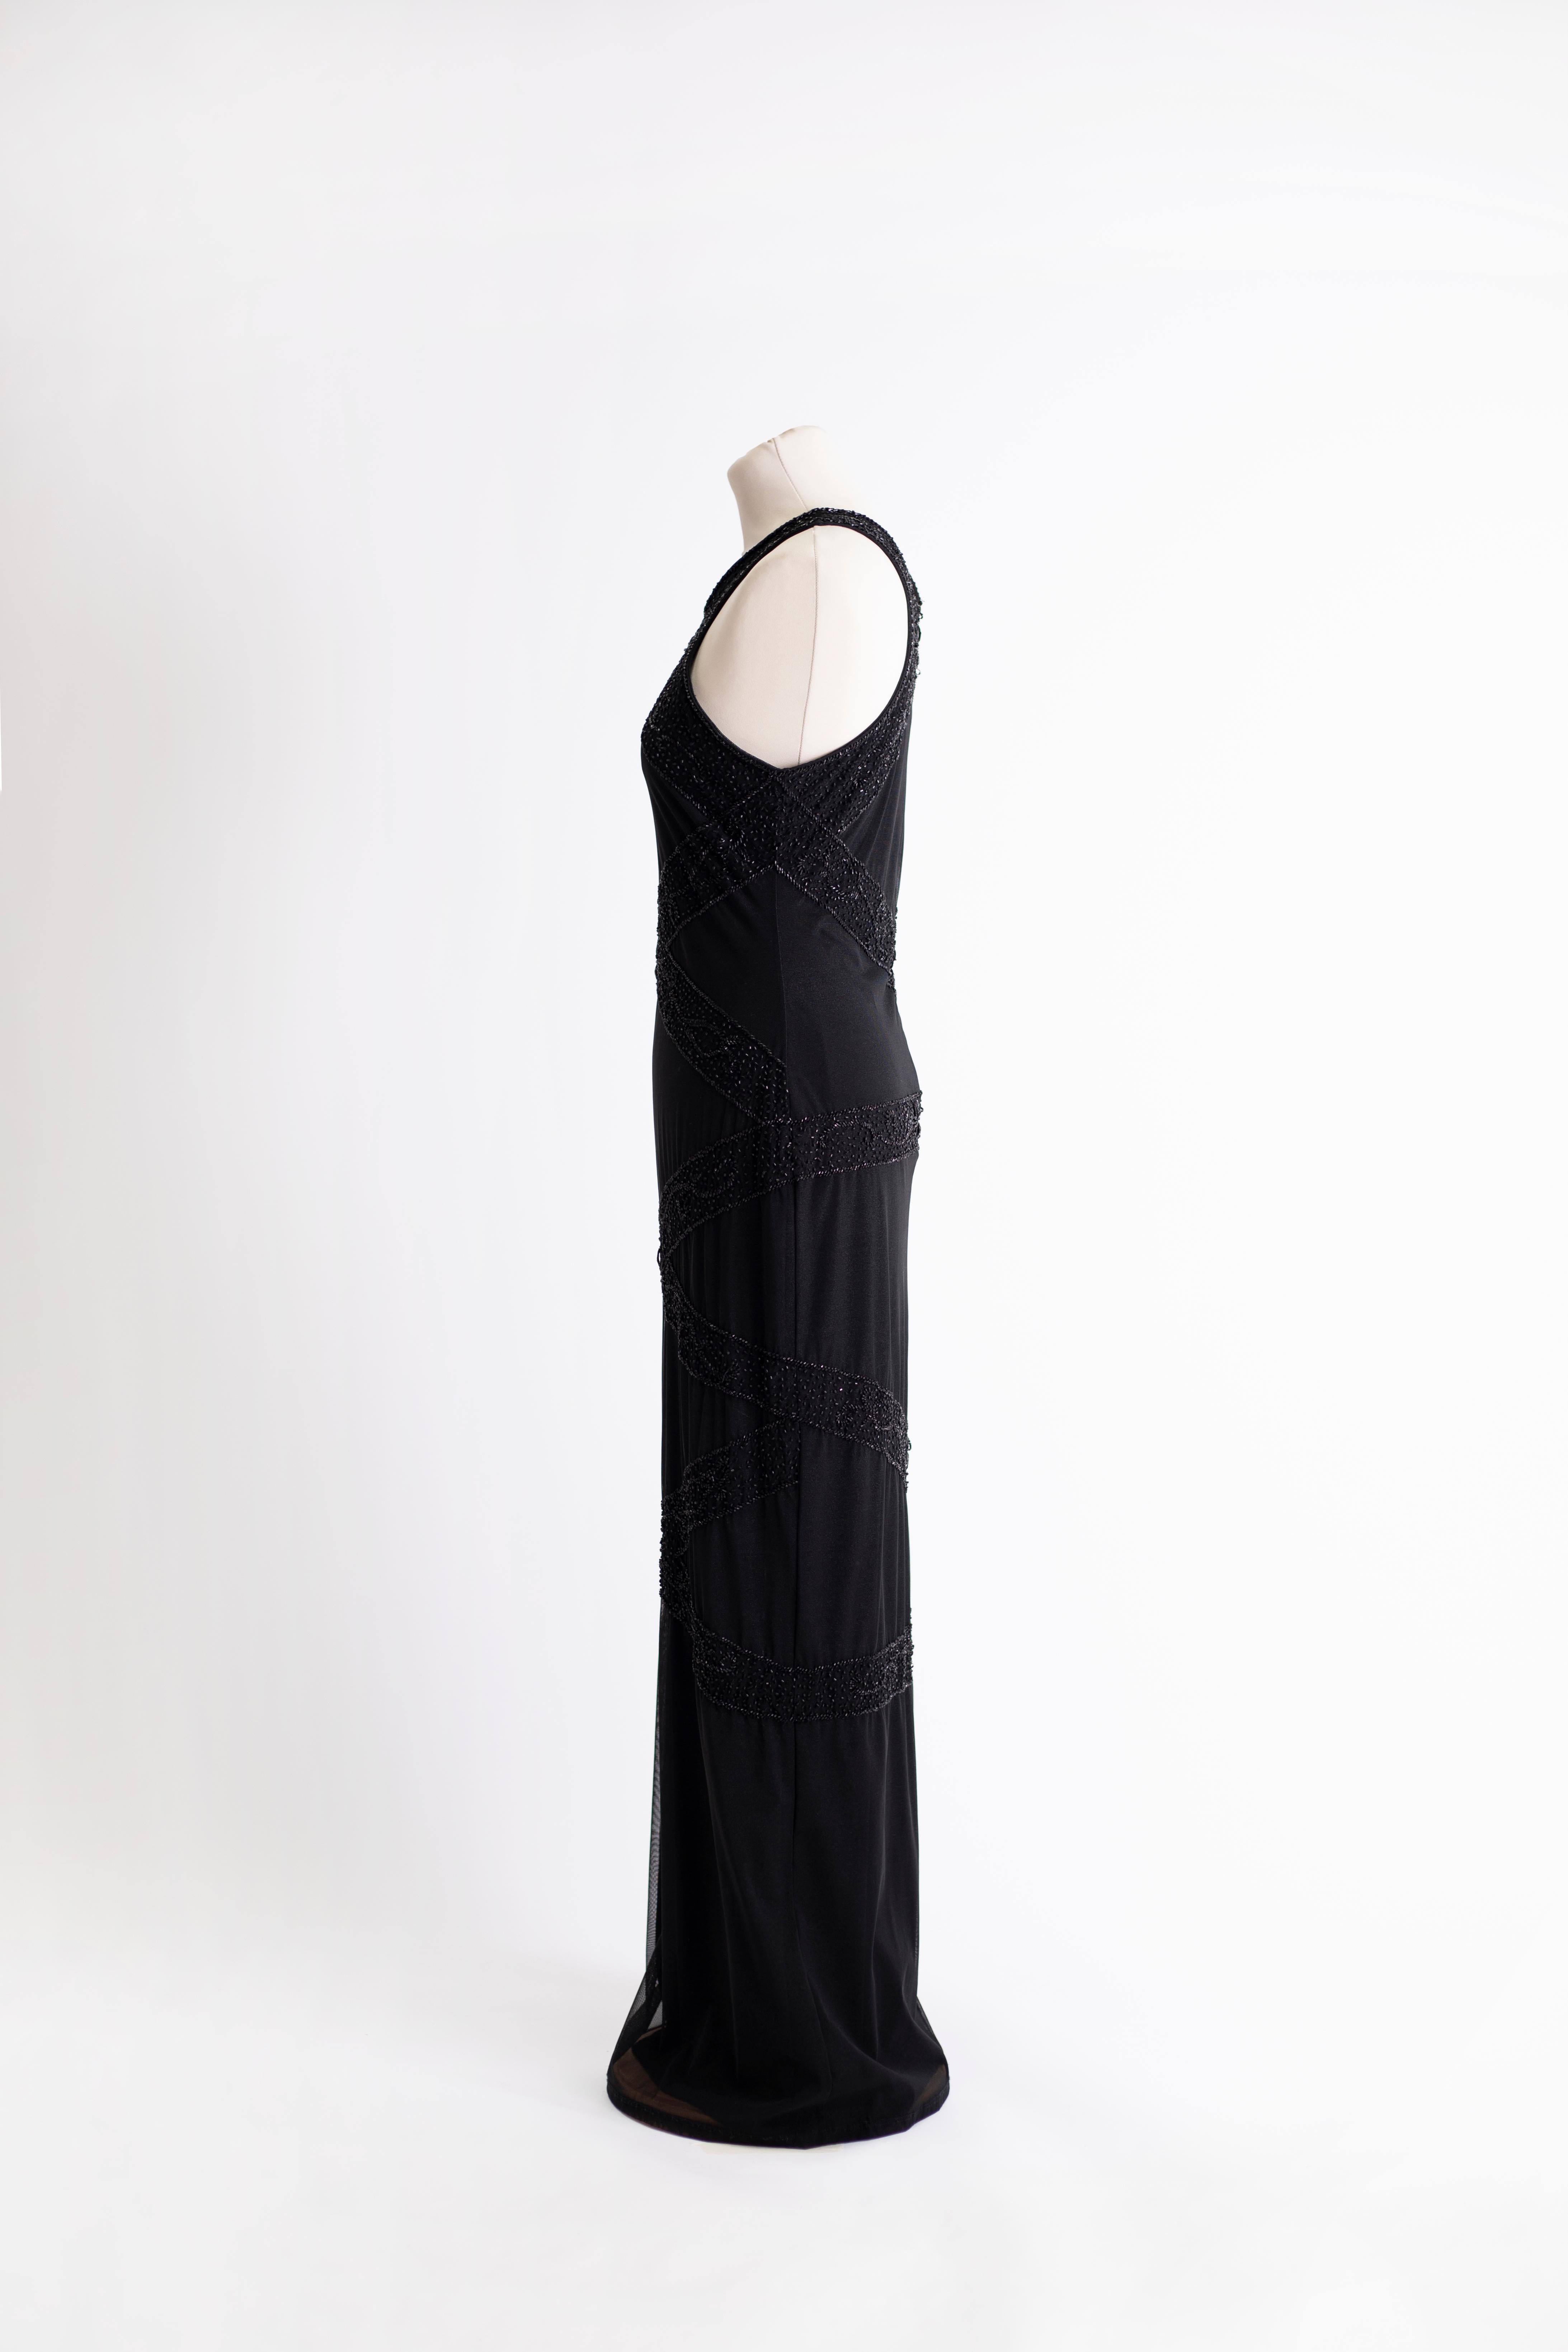 Langes schwarzes Kleid mit Neckholder. Stretchgewebe aus Polyester und Elasthan. Perlenstickerei.

Größe: L

Dehnen
Taille: 74 cm
Länge: 143 cm
Oberweite: 86 cm